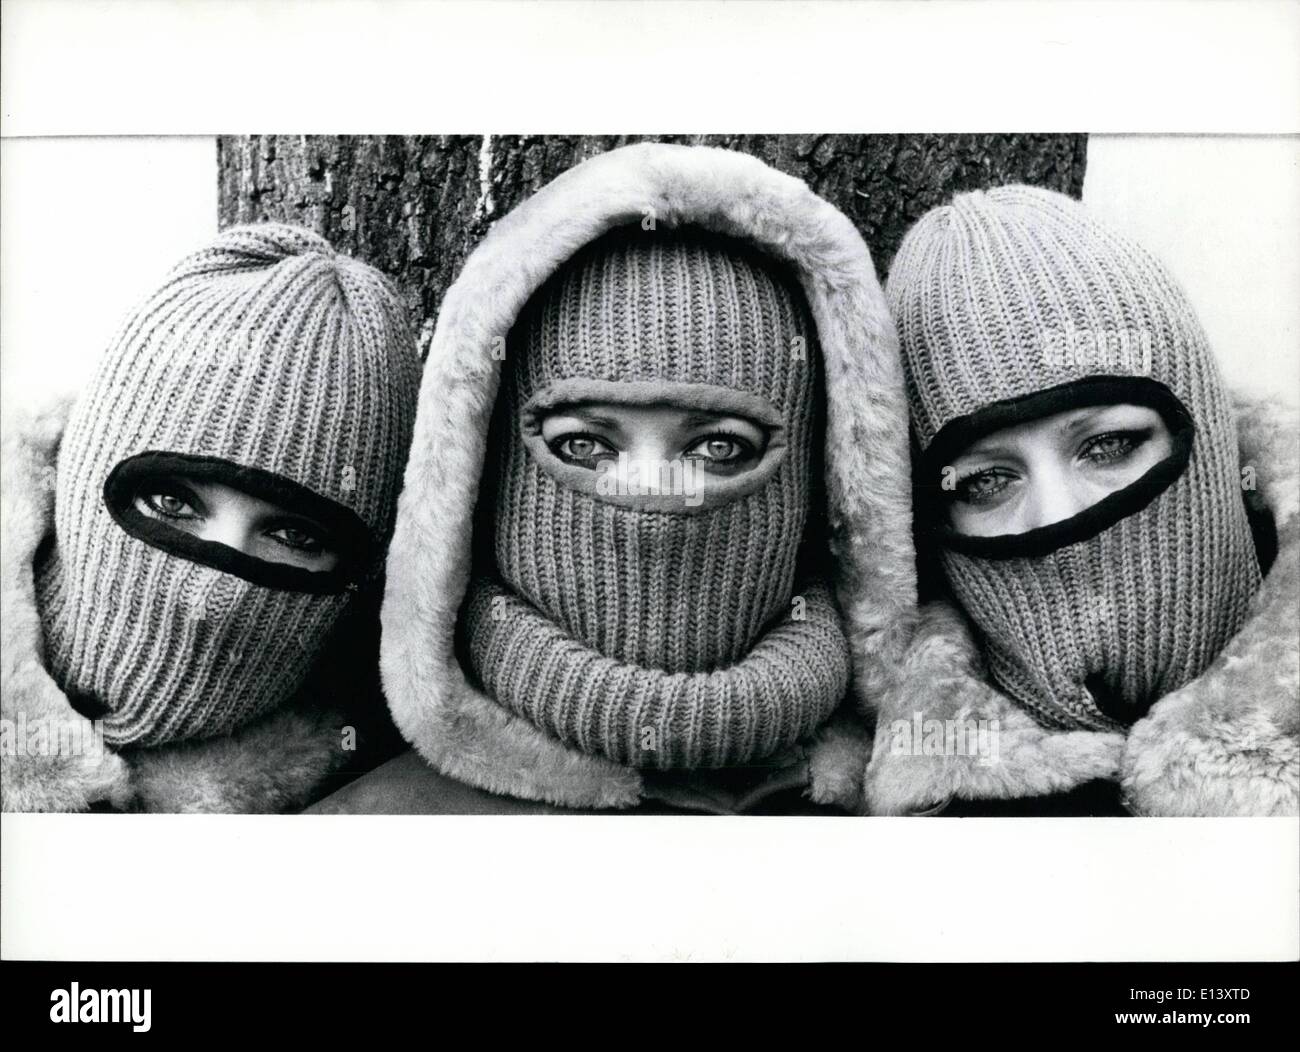 27 mars 2012 - chaud, plus chaud, le plus chaud ! Manifestant contre la chaleur qui règne sur l'Europe, sont vus ces trois jeunes femmes faisant d'une façon extraordinaire : très chaud avec ces bouchons semblable à un masque. Bien sûr ce mode de tricotage est faite pour les jours d'hiver, en provenance de la Suède, mais qui sait, peut-être été effrayé à cette vue, tournant un peu froid. Banque D'Images